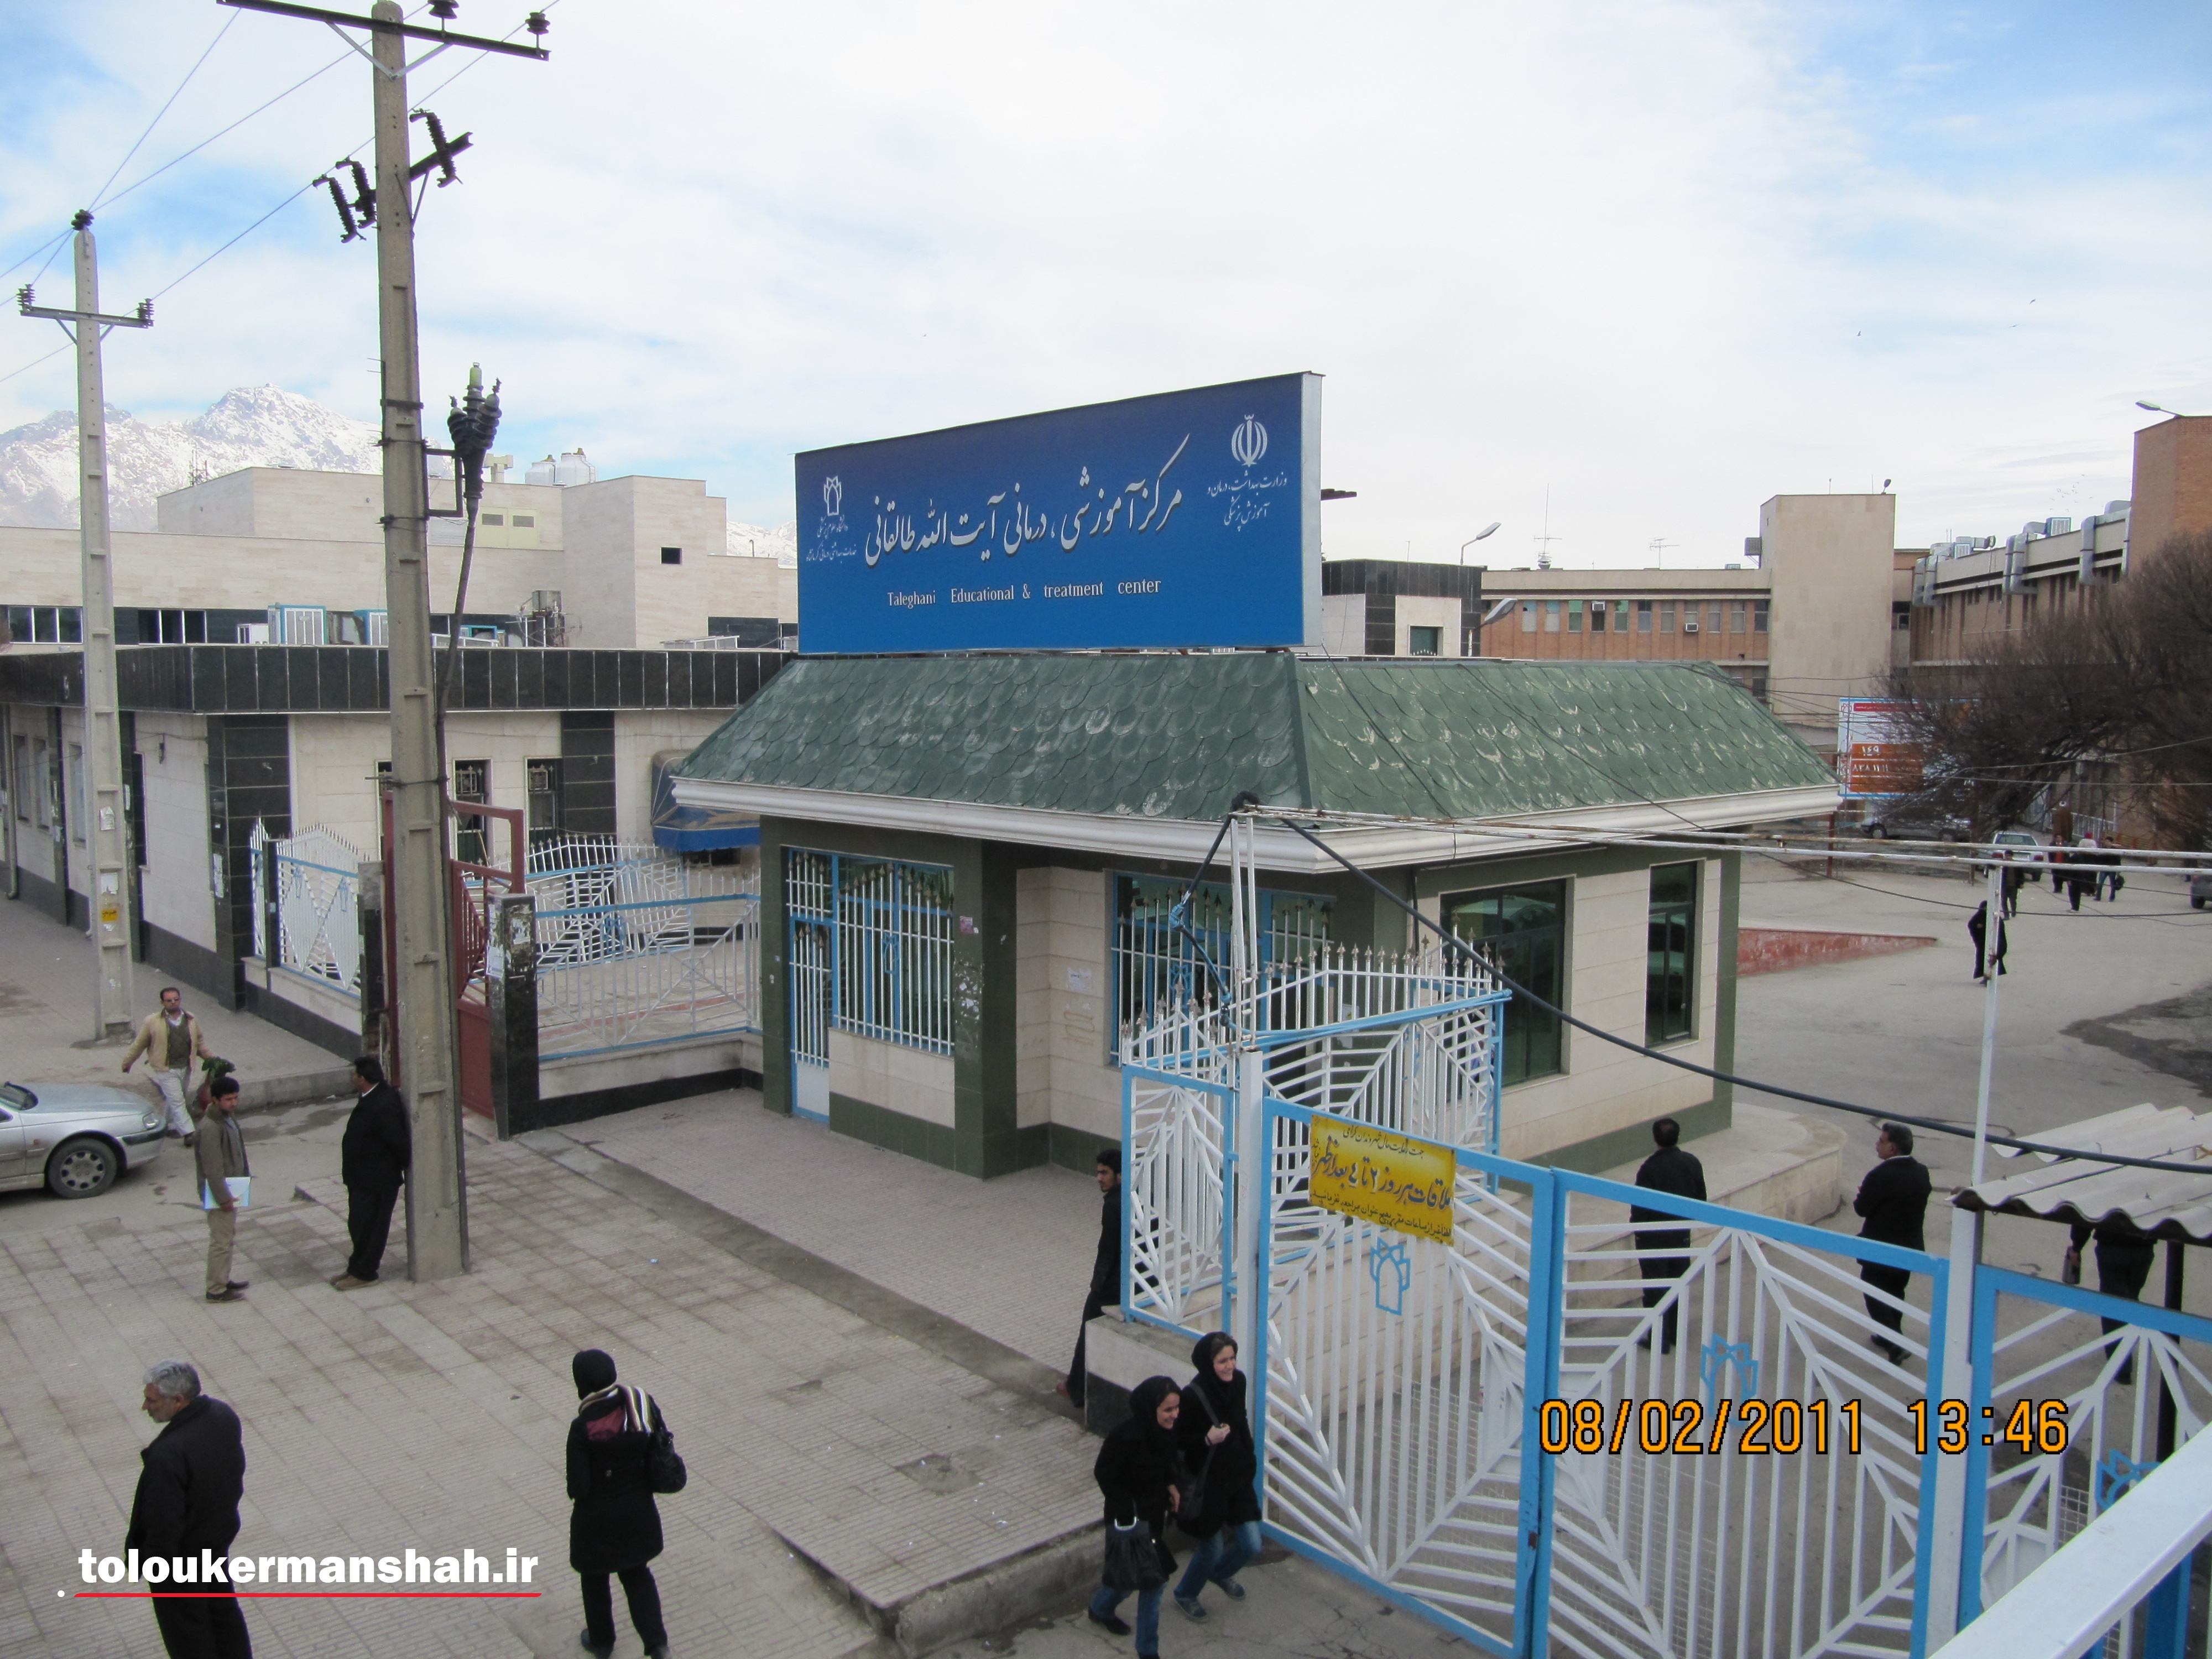 رییس فوریت های پزشکی استان کرمانشاه گفت: بر اثر واژگونی یک دستگاه مینی بوس ۱۸ نفر کشته و زخمی شدند.